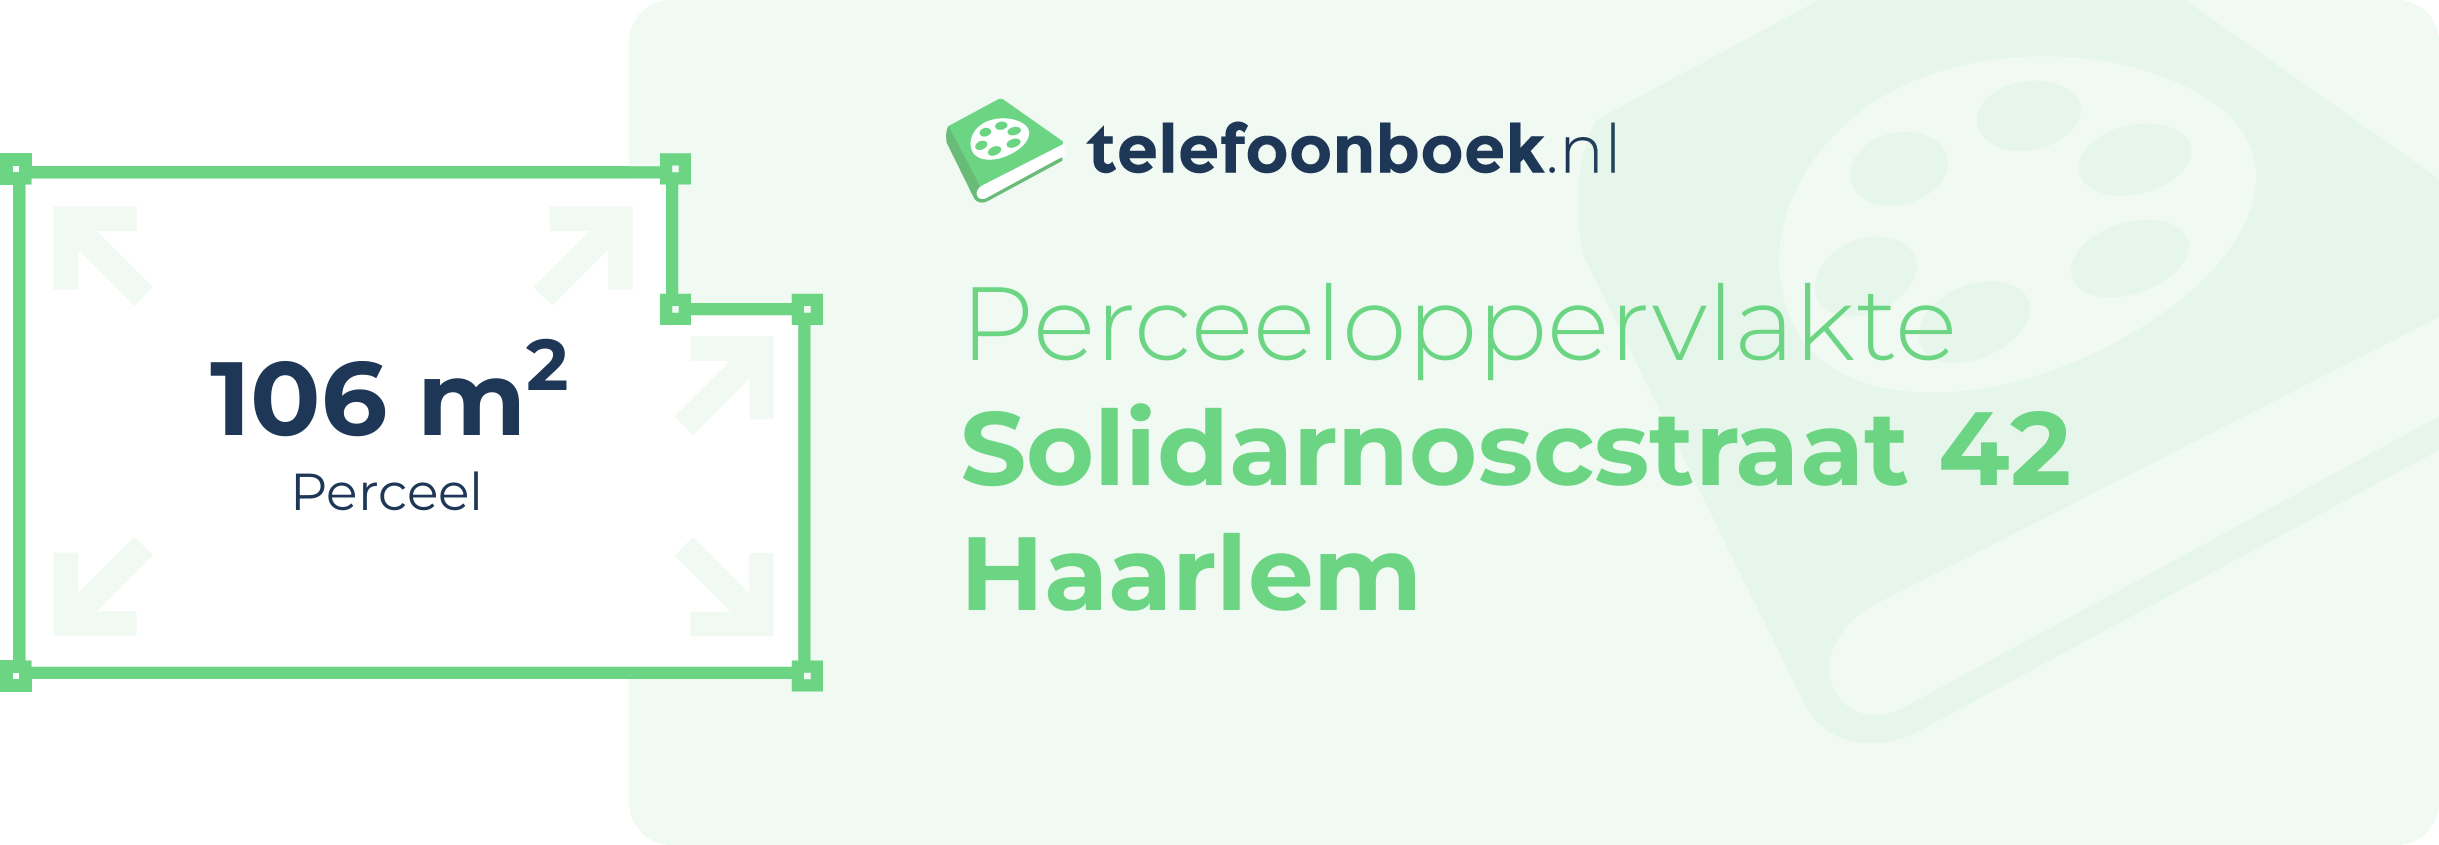 Perceeloppervlakte Solidarnoscstraat 42 Haarlem